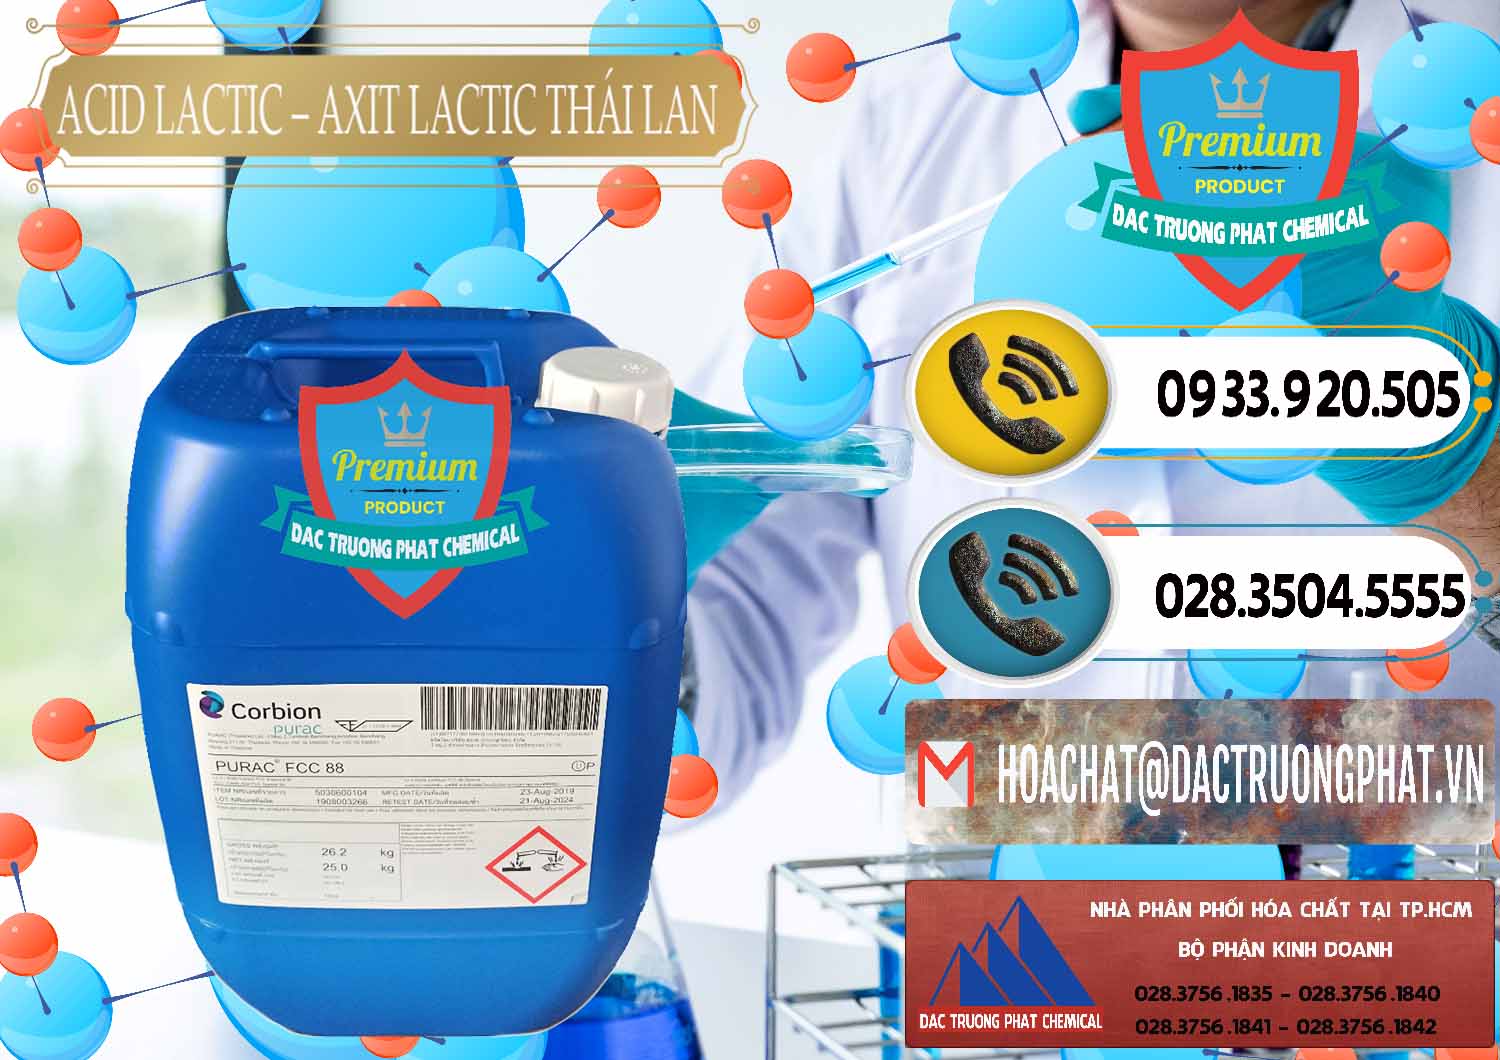 Nơi chuyên cung cấp - bán Acid Lactic – Axit Lactic Thái Lan Purac FCC 88 - 0012 - Chuyên bán _ phân phối hóa chất tại TP.HCM - hoachatdetnhuom.vn